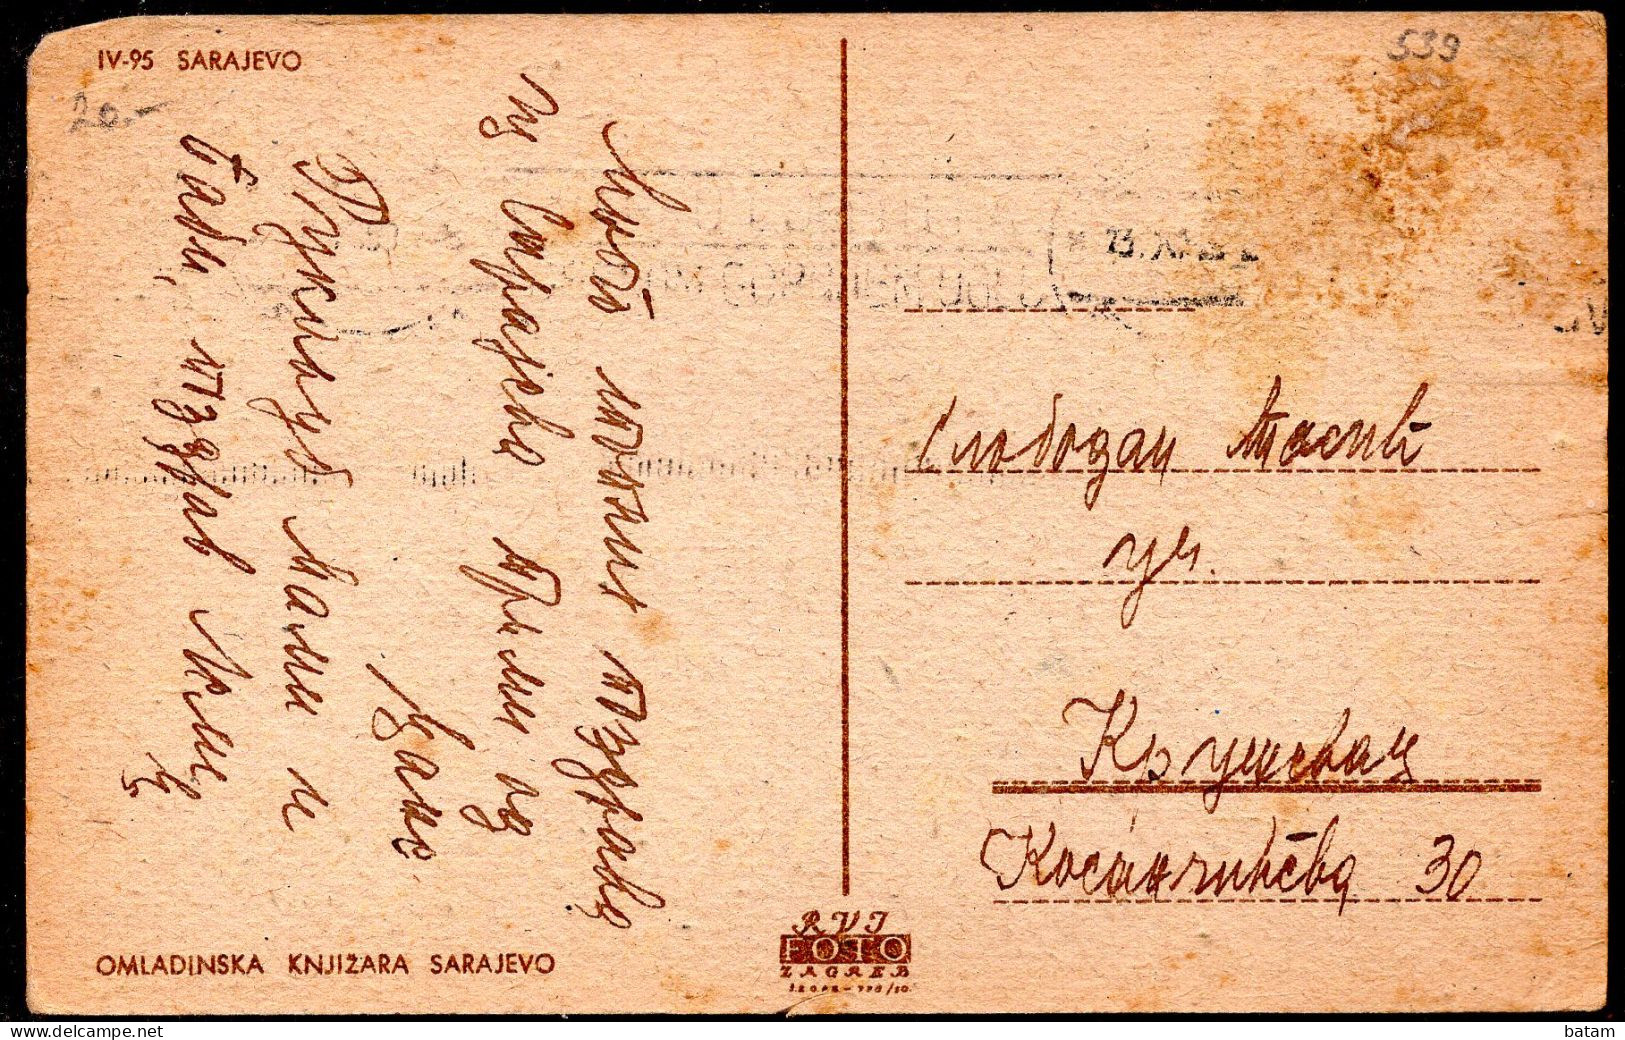 539 - Bosnia And Herzegovina - Sarajevo 1938 - Postcard - Bosnia And Herzegovina